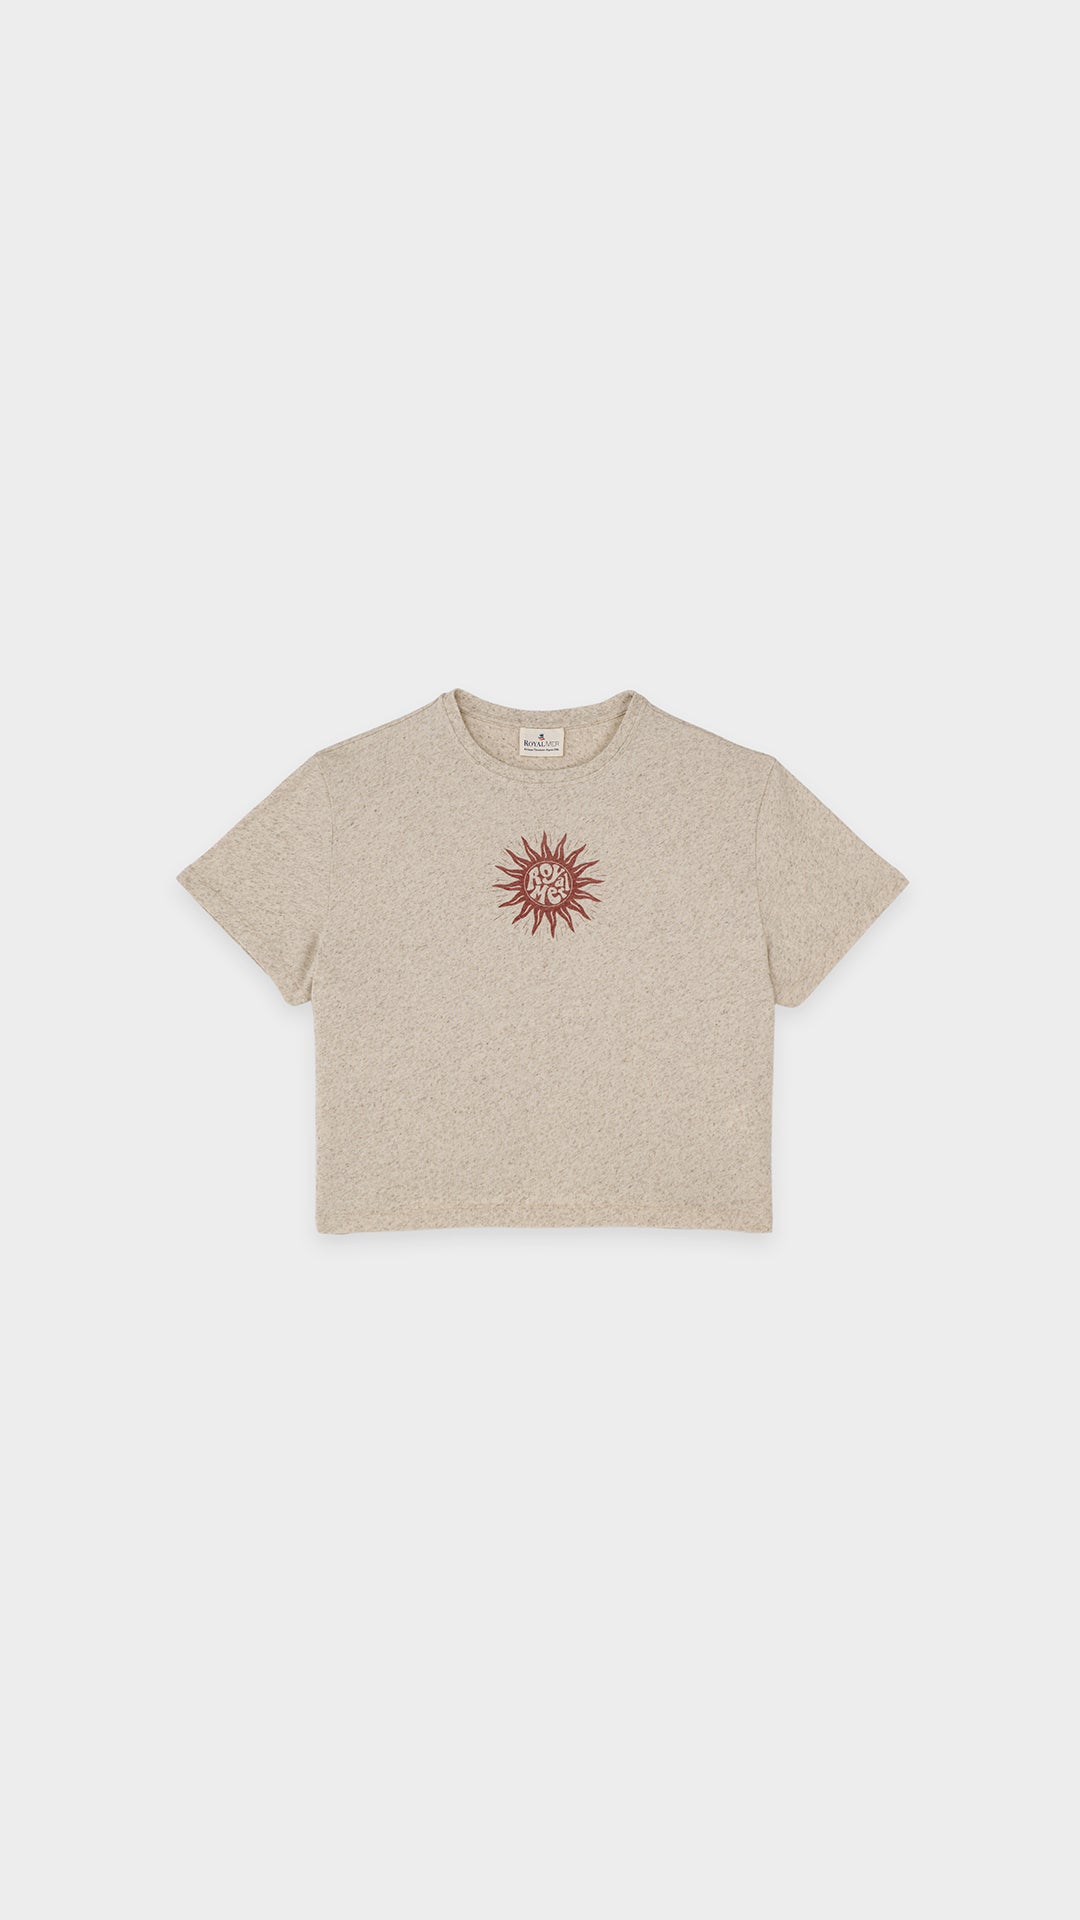 Sun t-shirt